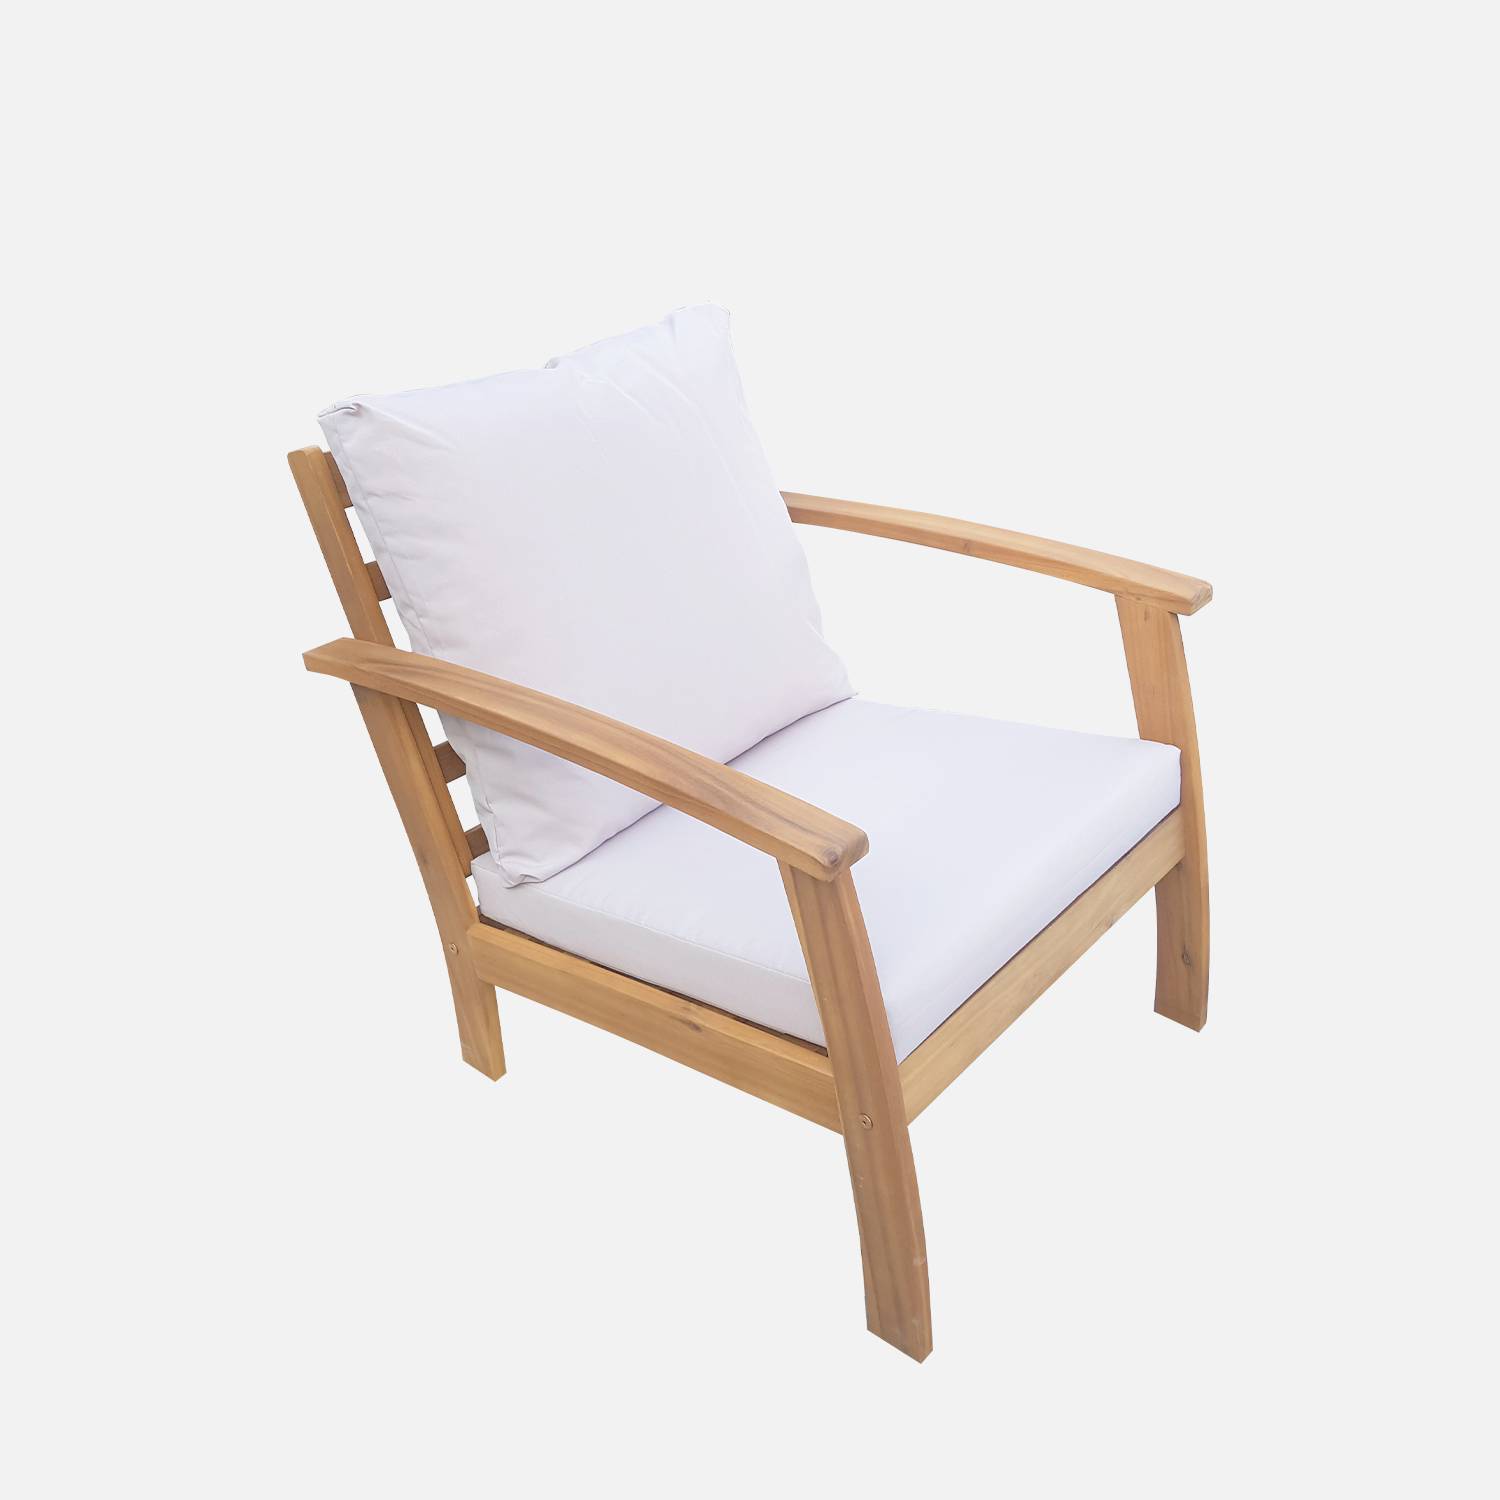 Gartengarnitur aus Holz 4 Sitze - Ushuaïa - ecrufarbene Kissen, Sofa, Sessel und Couchtisch aus Akazie, Design Photo6